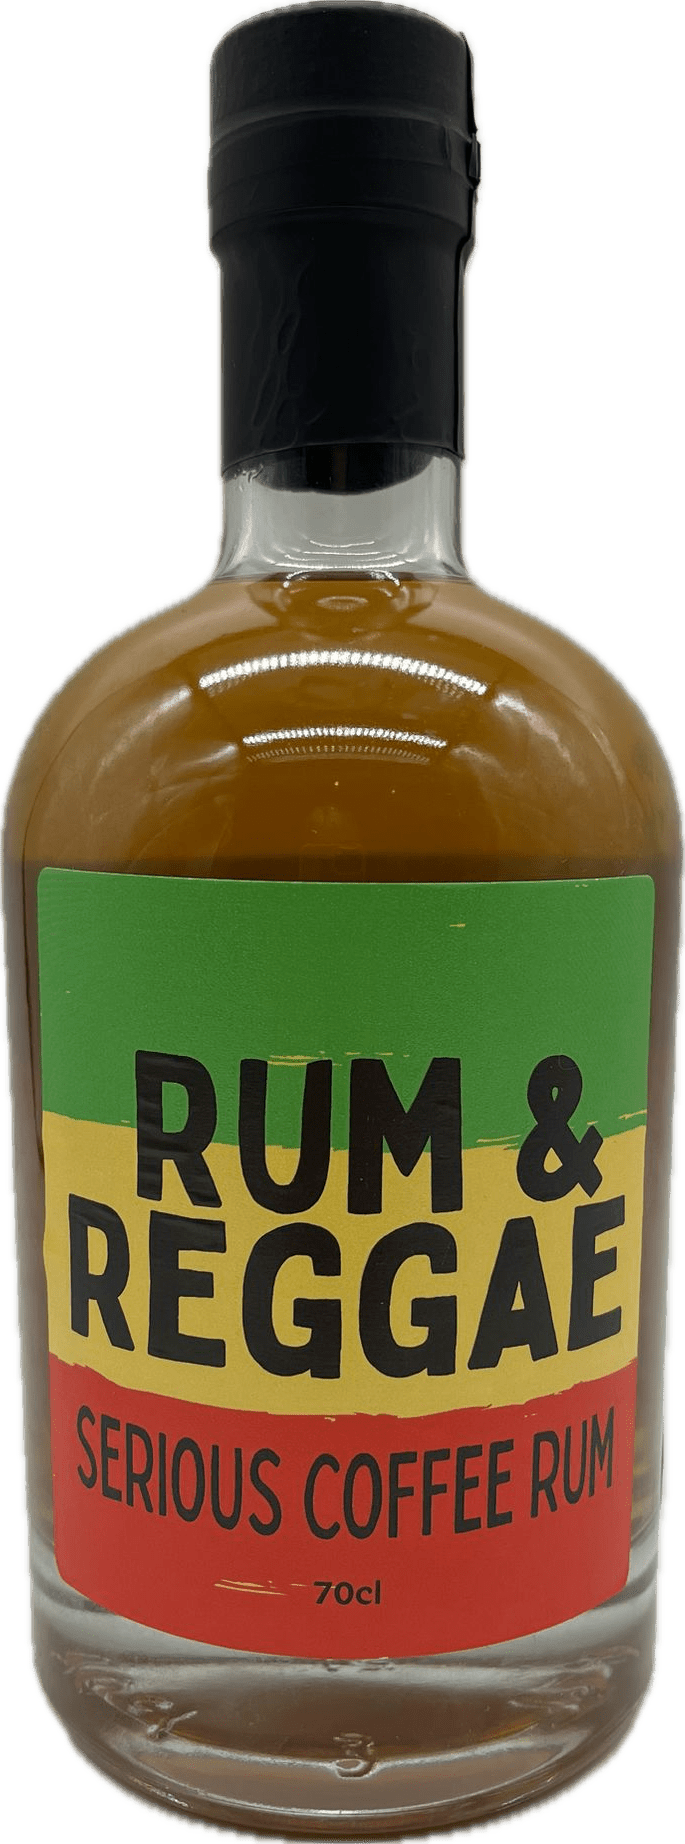 Rum & Reggae Serious Coffee Rum 70cl